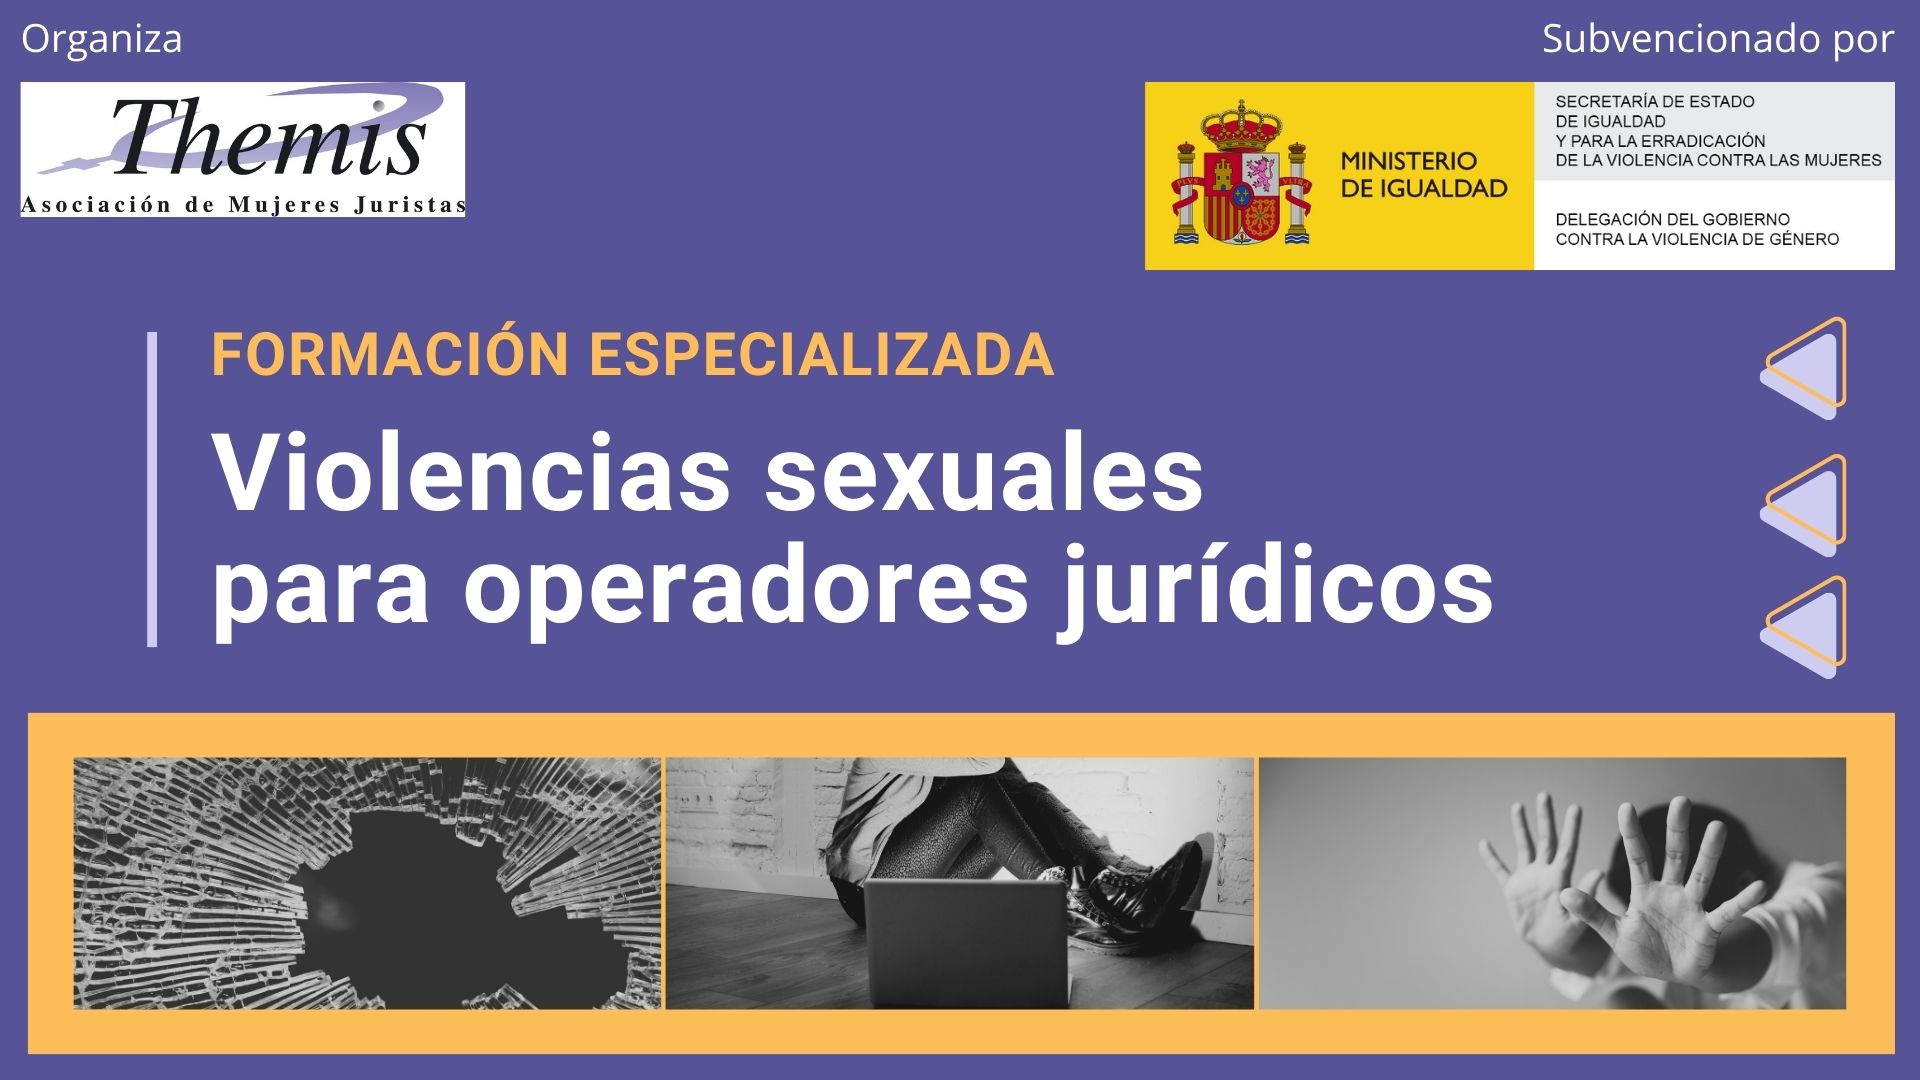 Formación especializada en violencias sexuales para operadores jurídicos